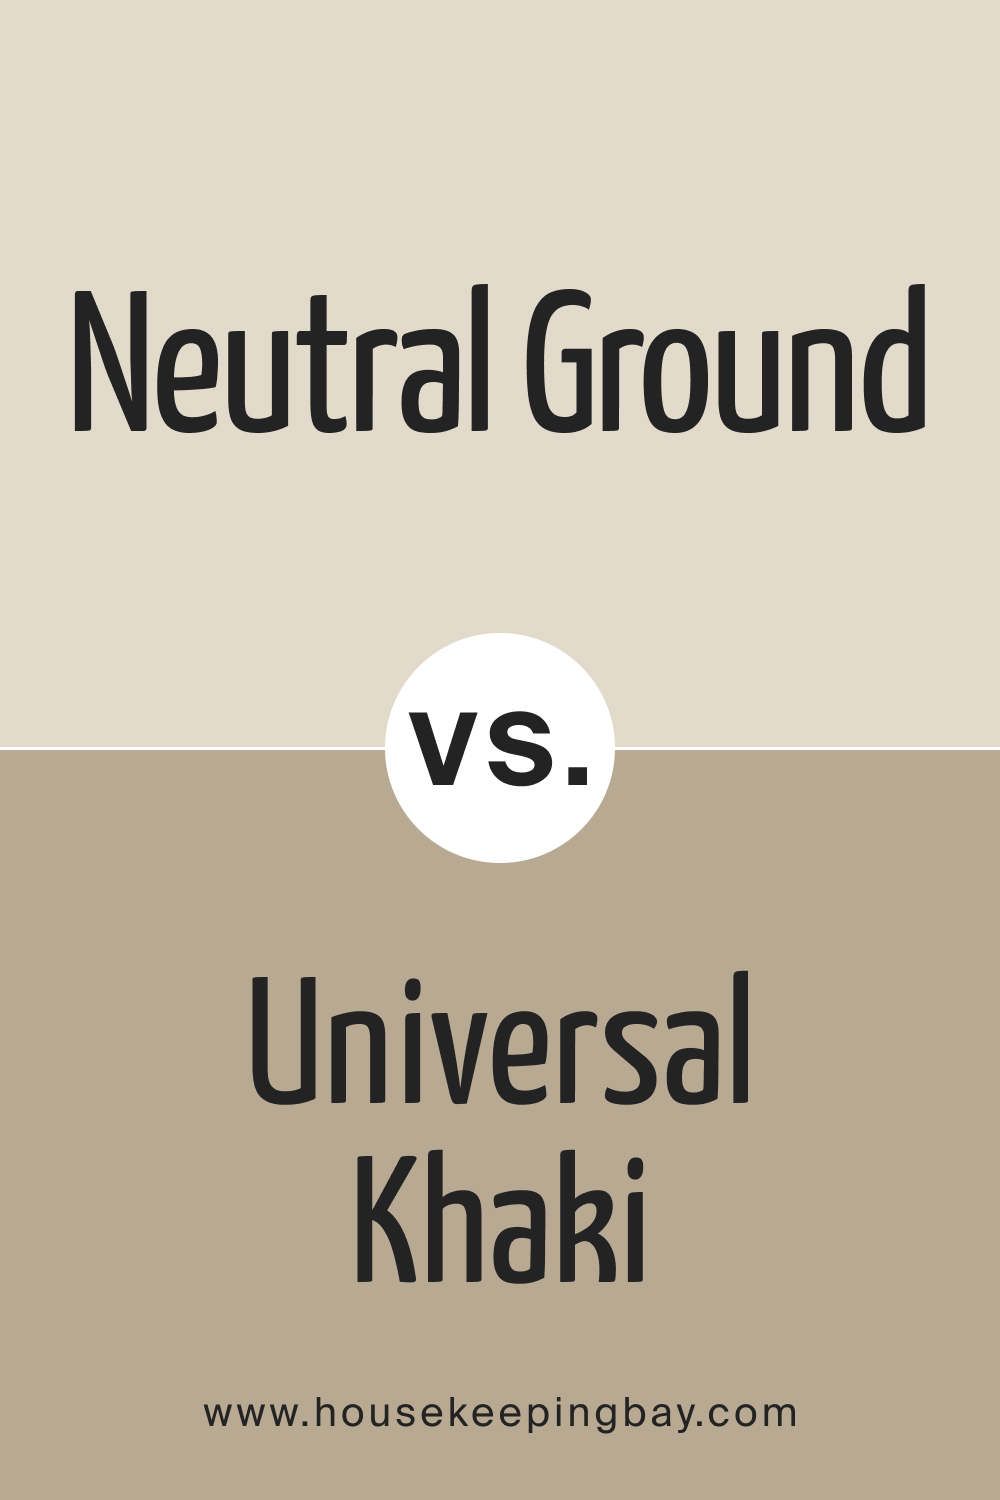 Neutral Ground vs Universal Khaki